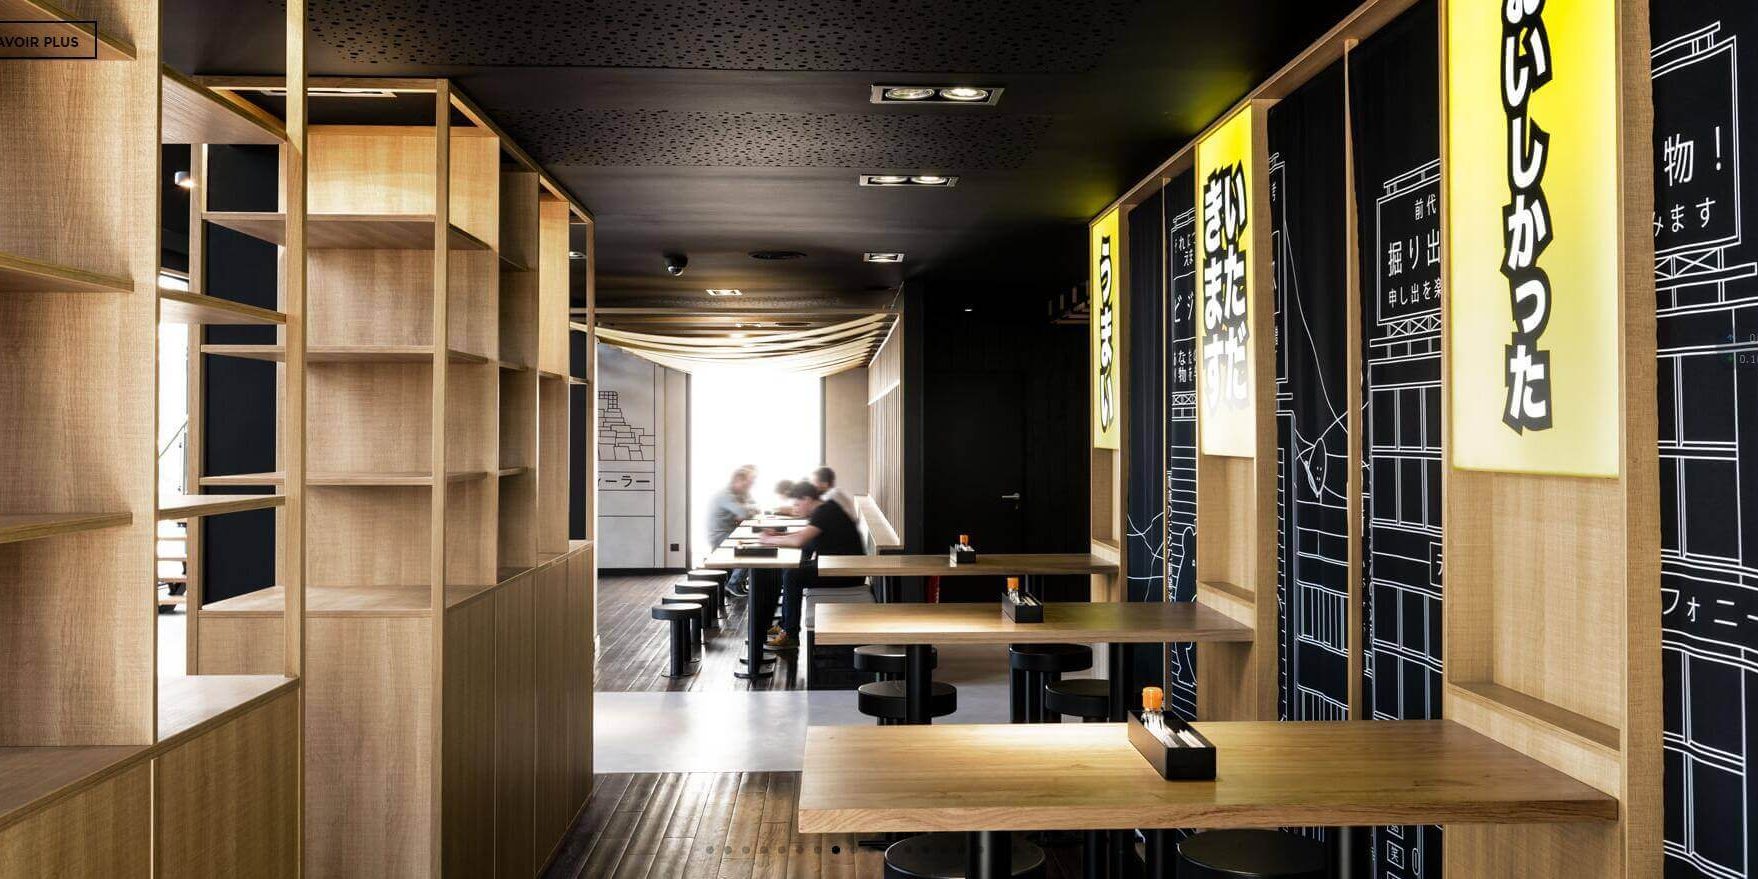 时空穿越感的怀旧壁画 法国日式餐厅NOBINOBI